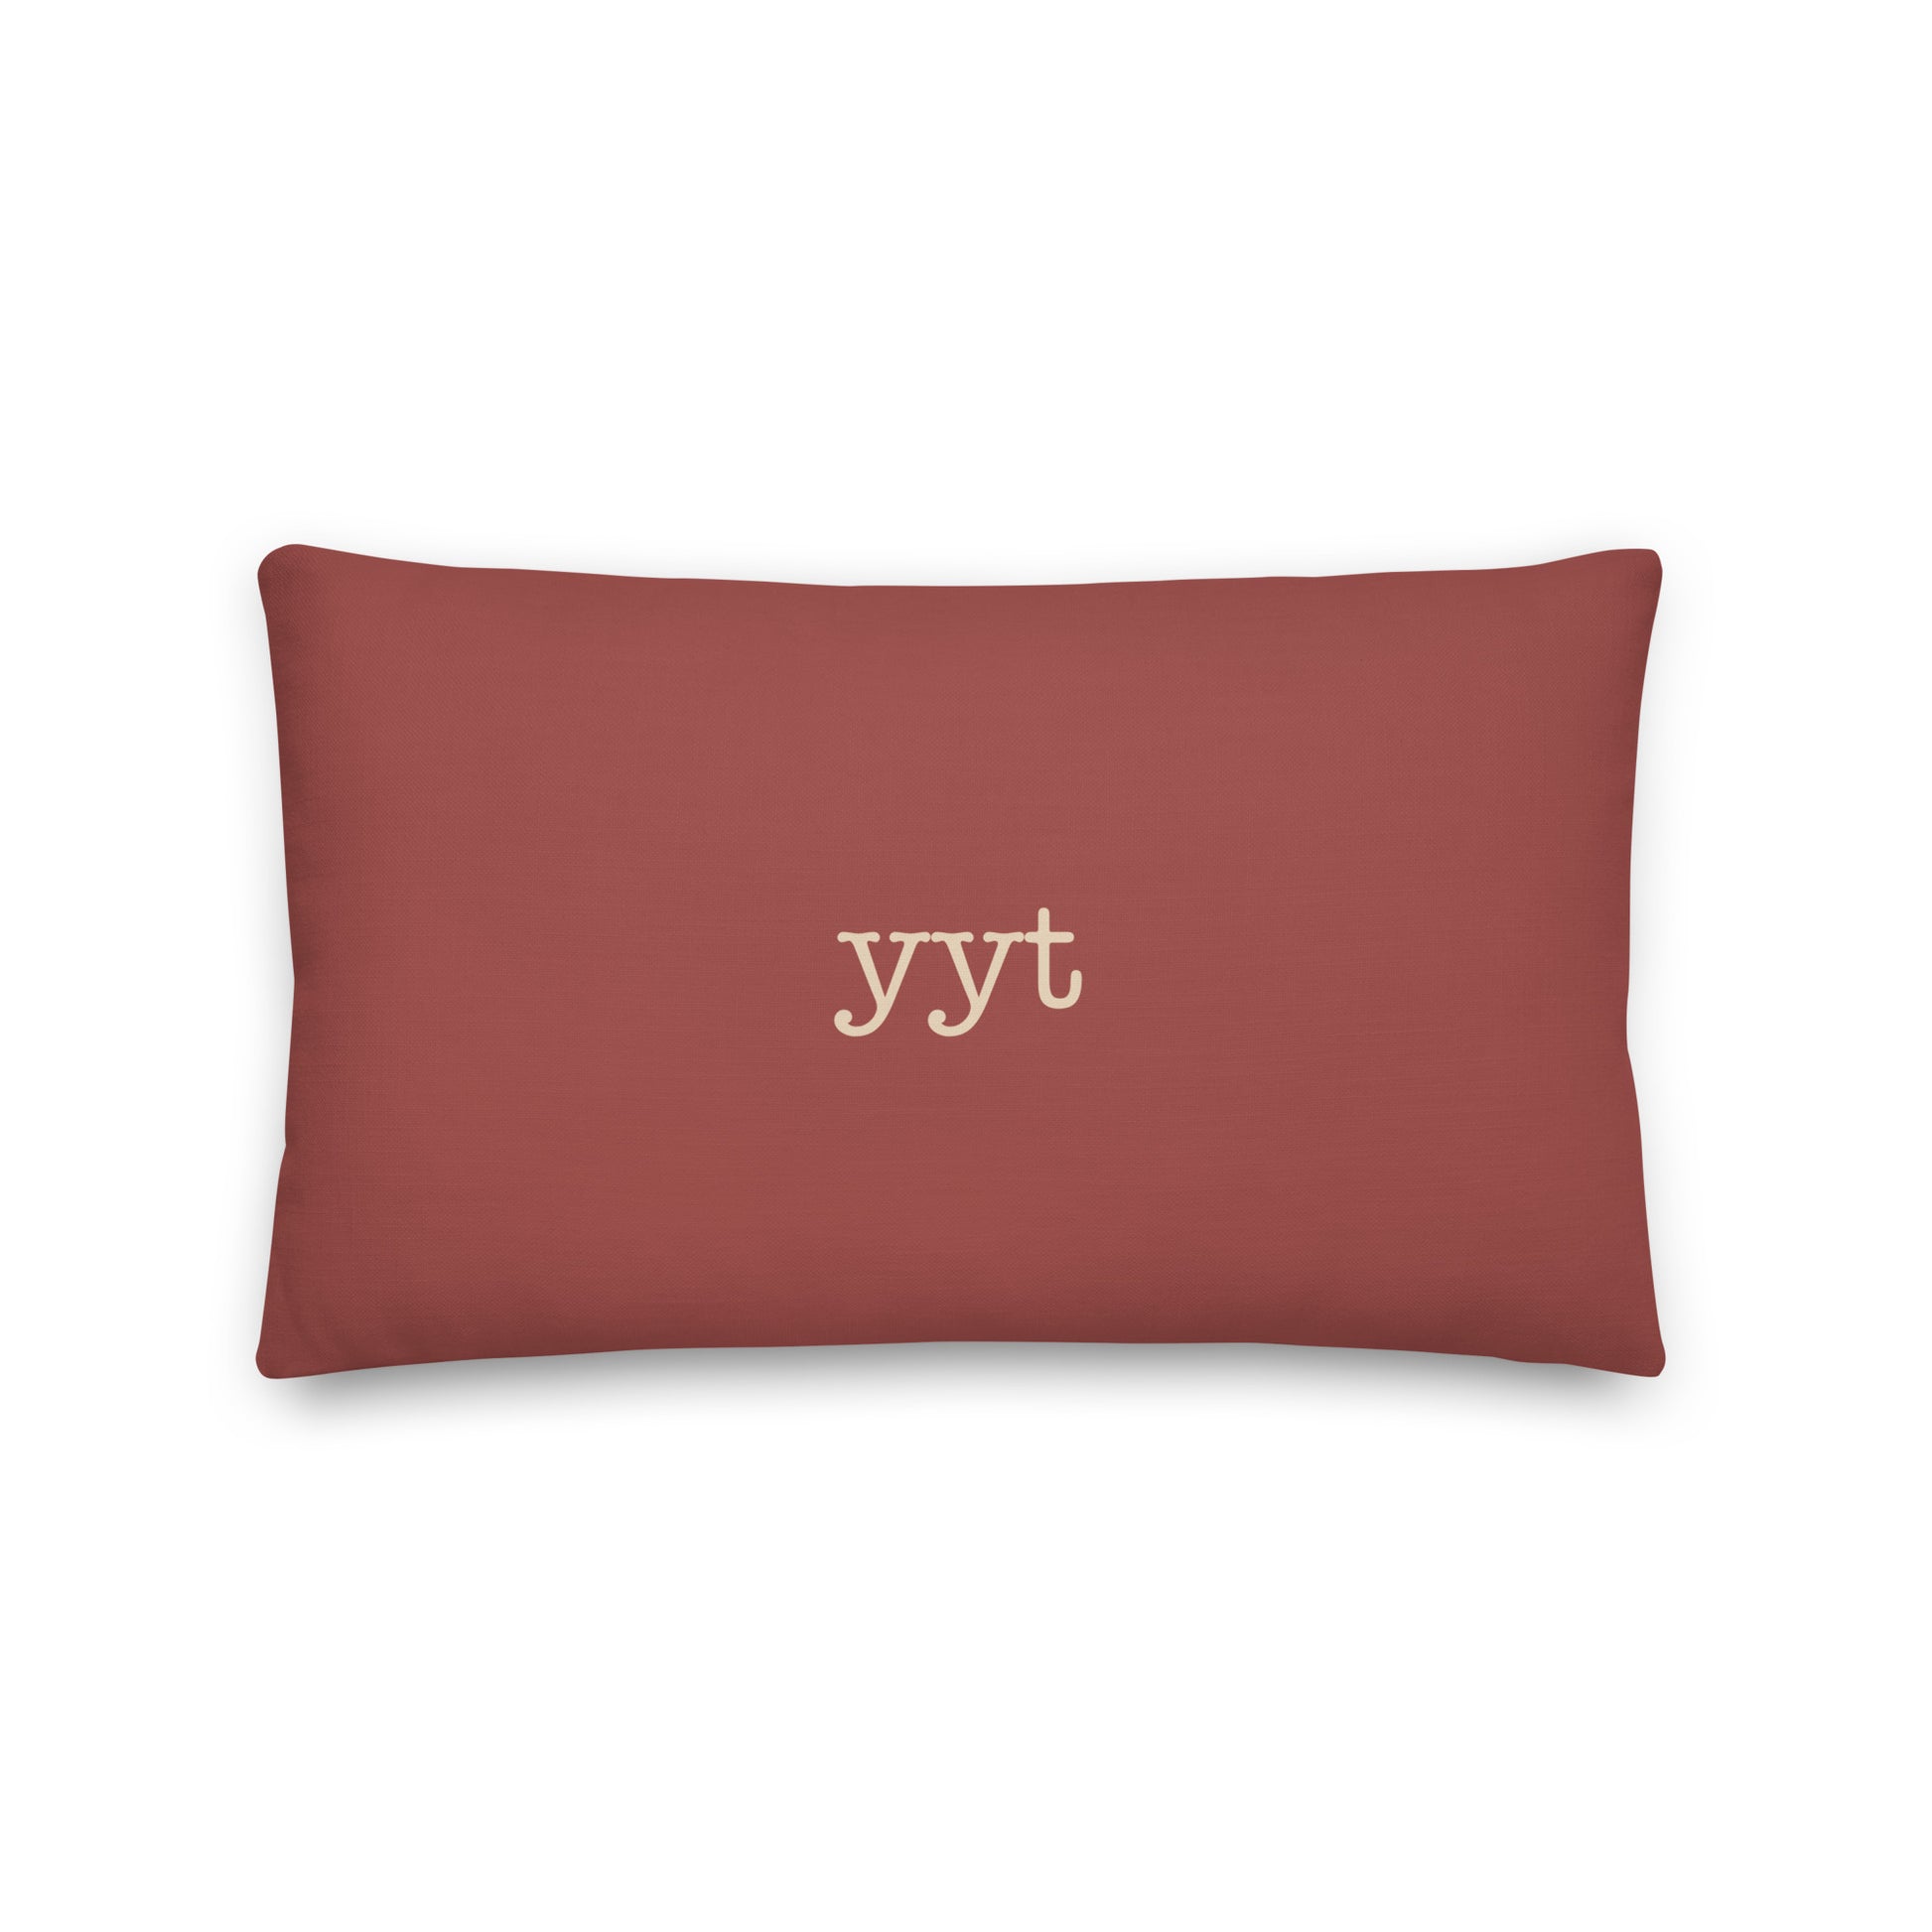 Typewriter Pillow - Terra Cotta • YYT St. John's • YHM Designs - Image 02